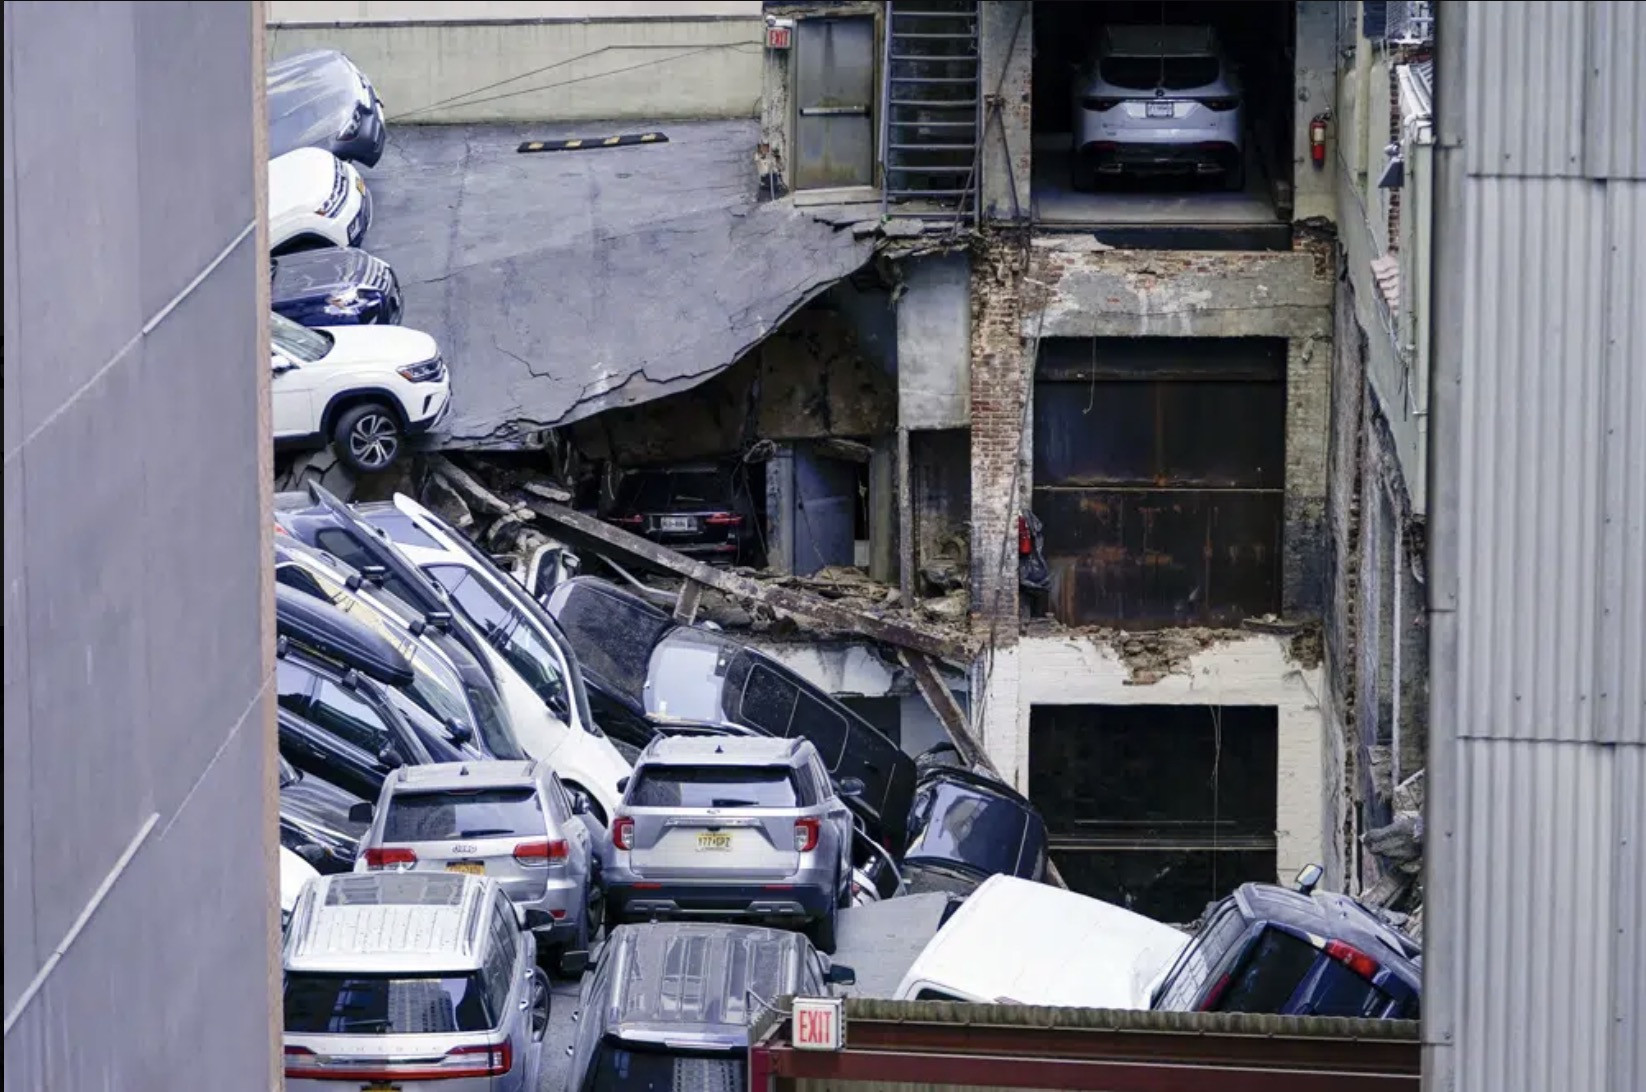 Video bãi đỗ xe cao tầng ở New York sập, ô tô chồng chất lên nhau